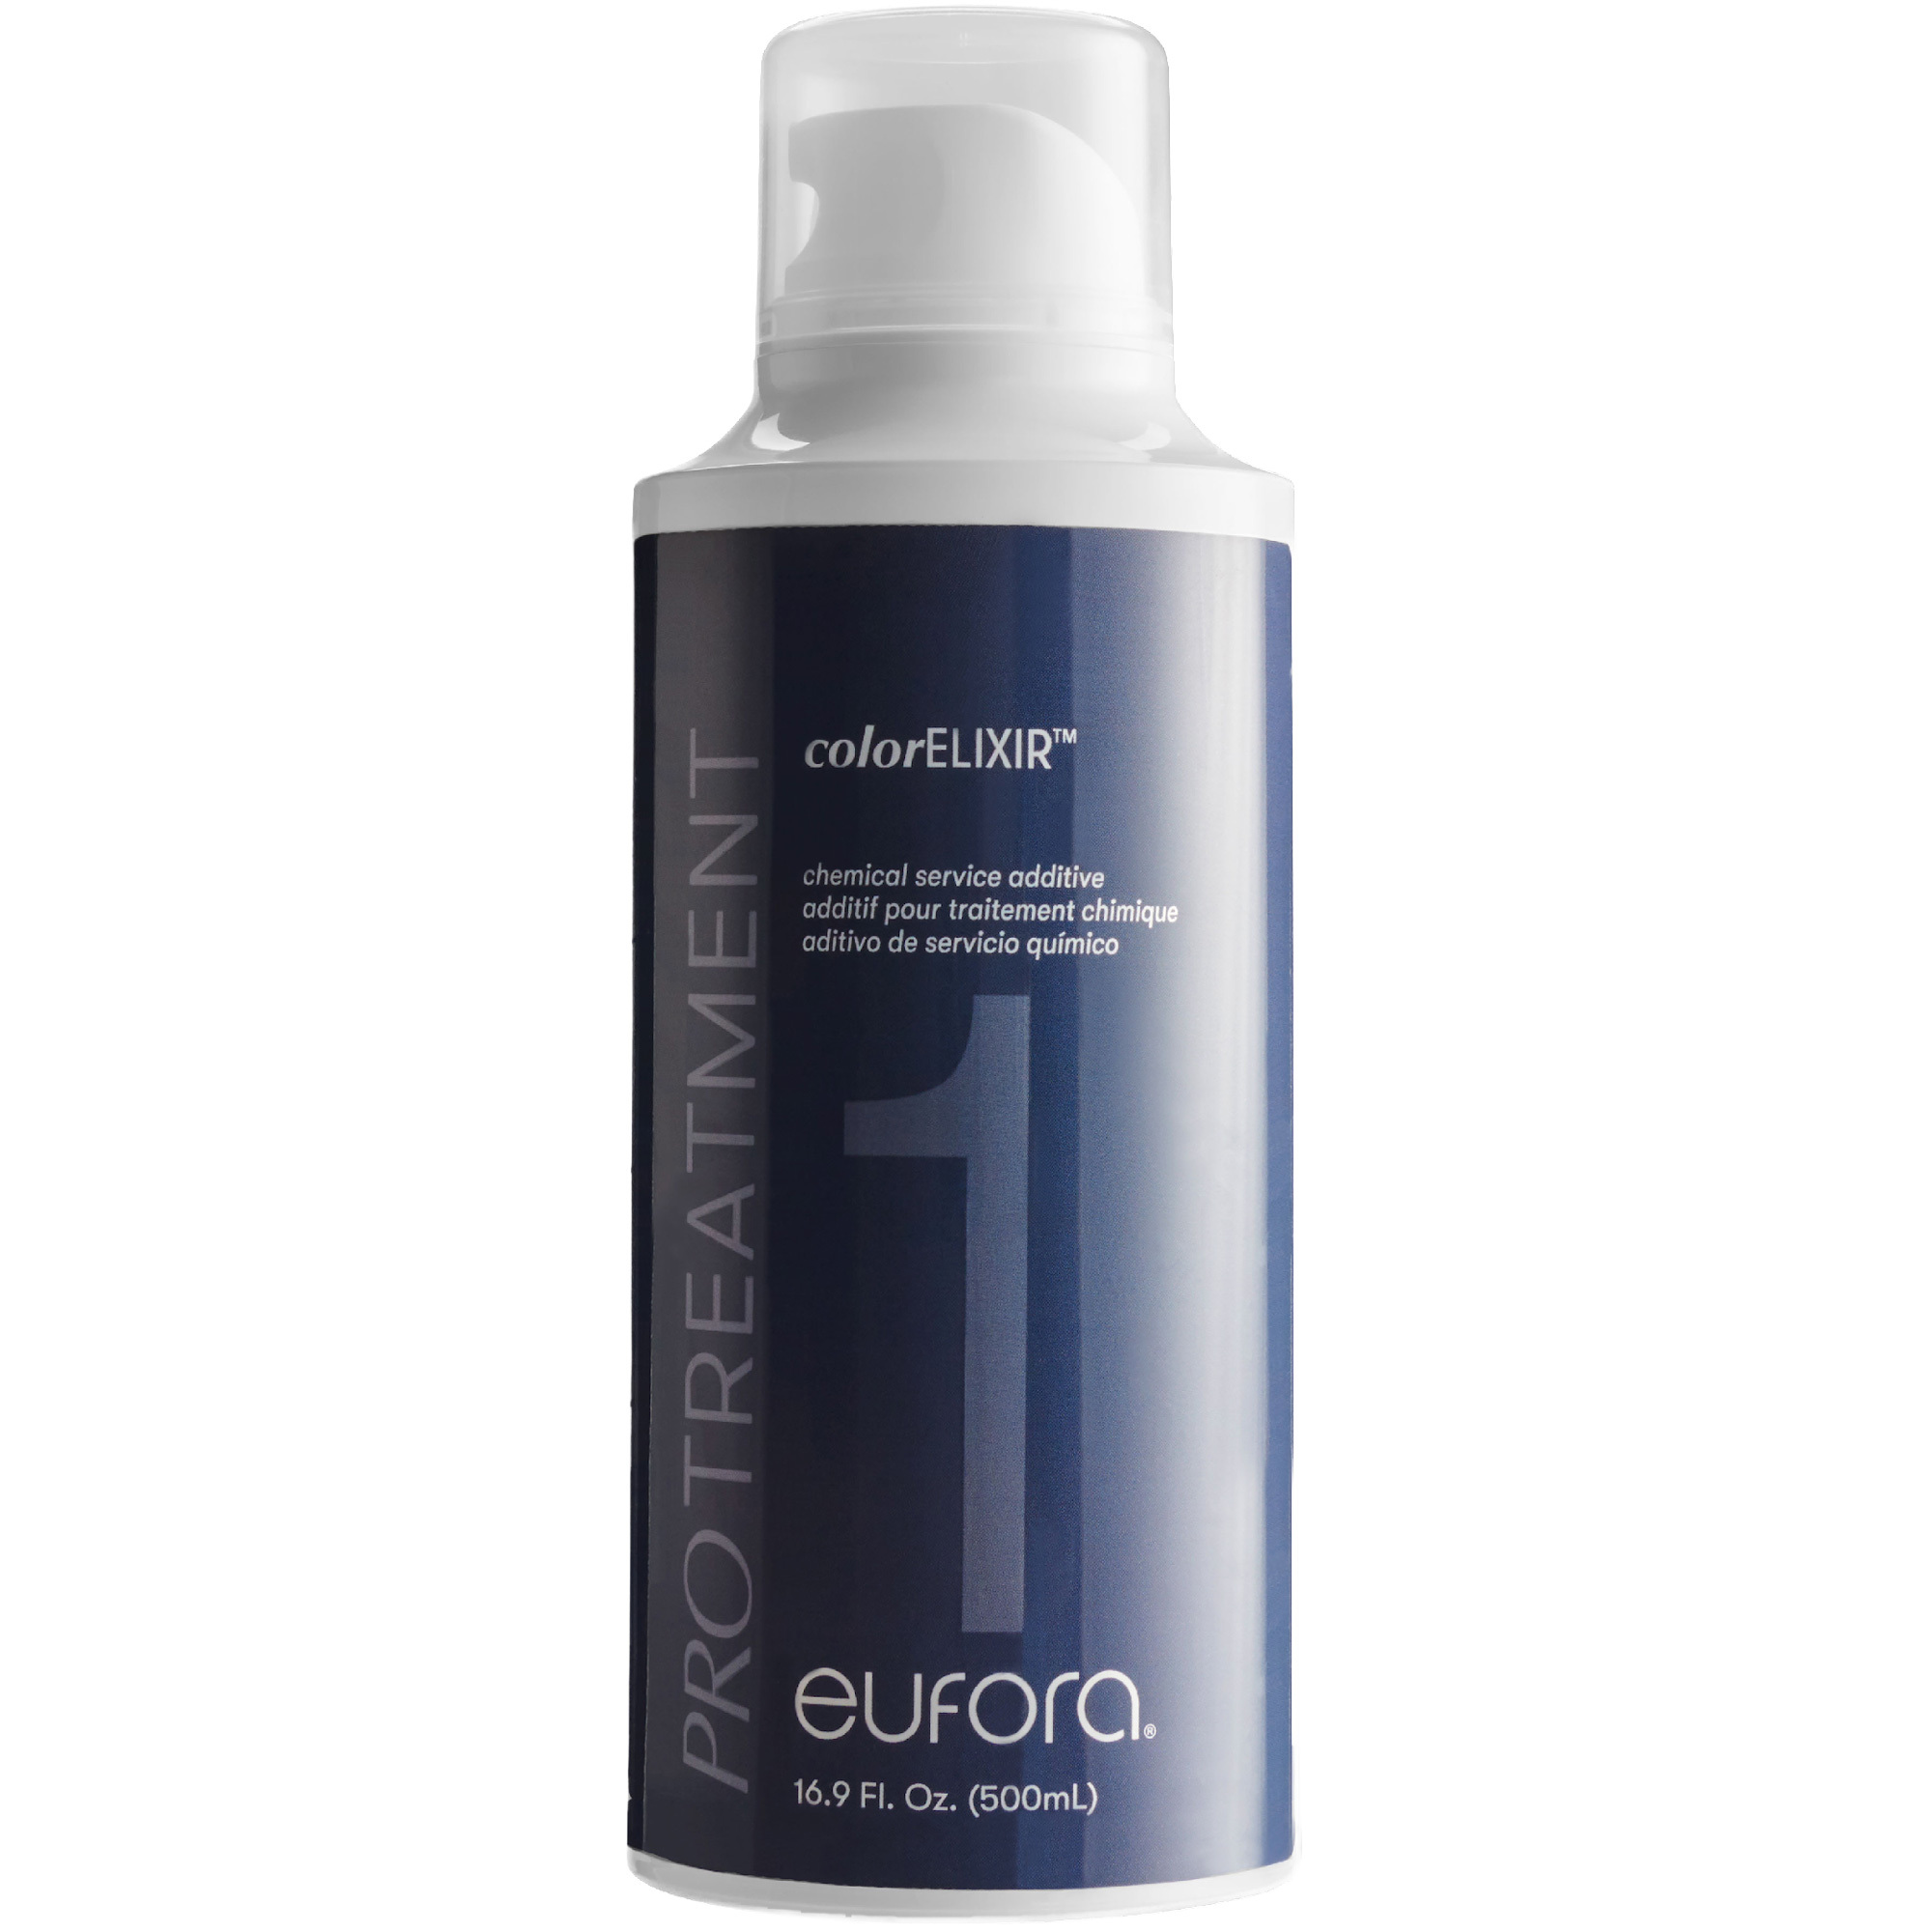 Eufora PRO Treatment: Color Elixir Additive Step 1